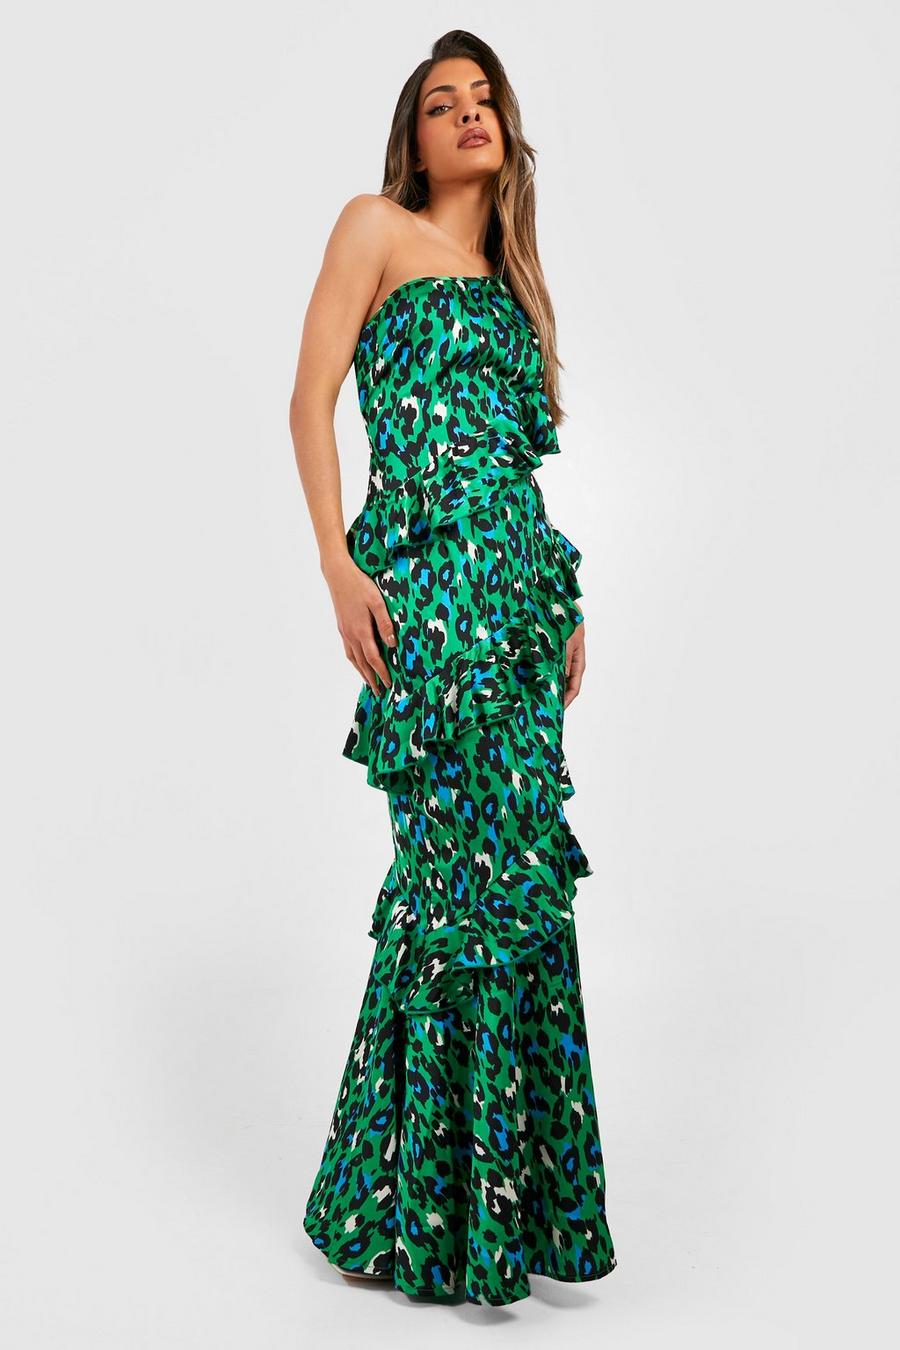 Green Leopard Print One Shoulder Maxi Dress